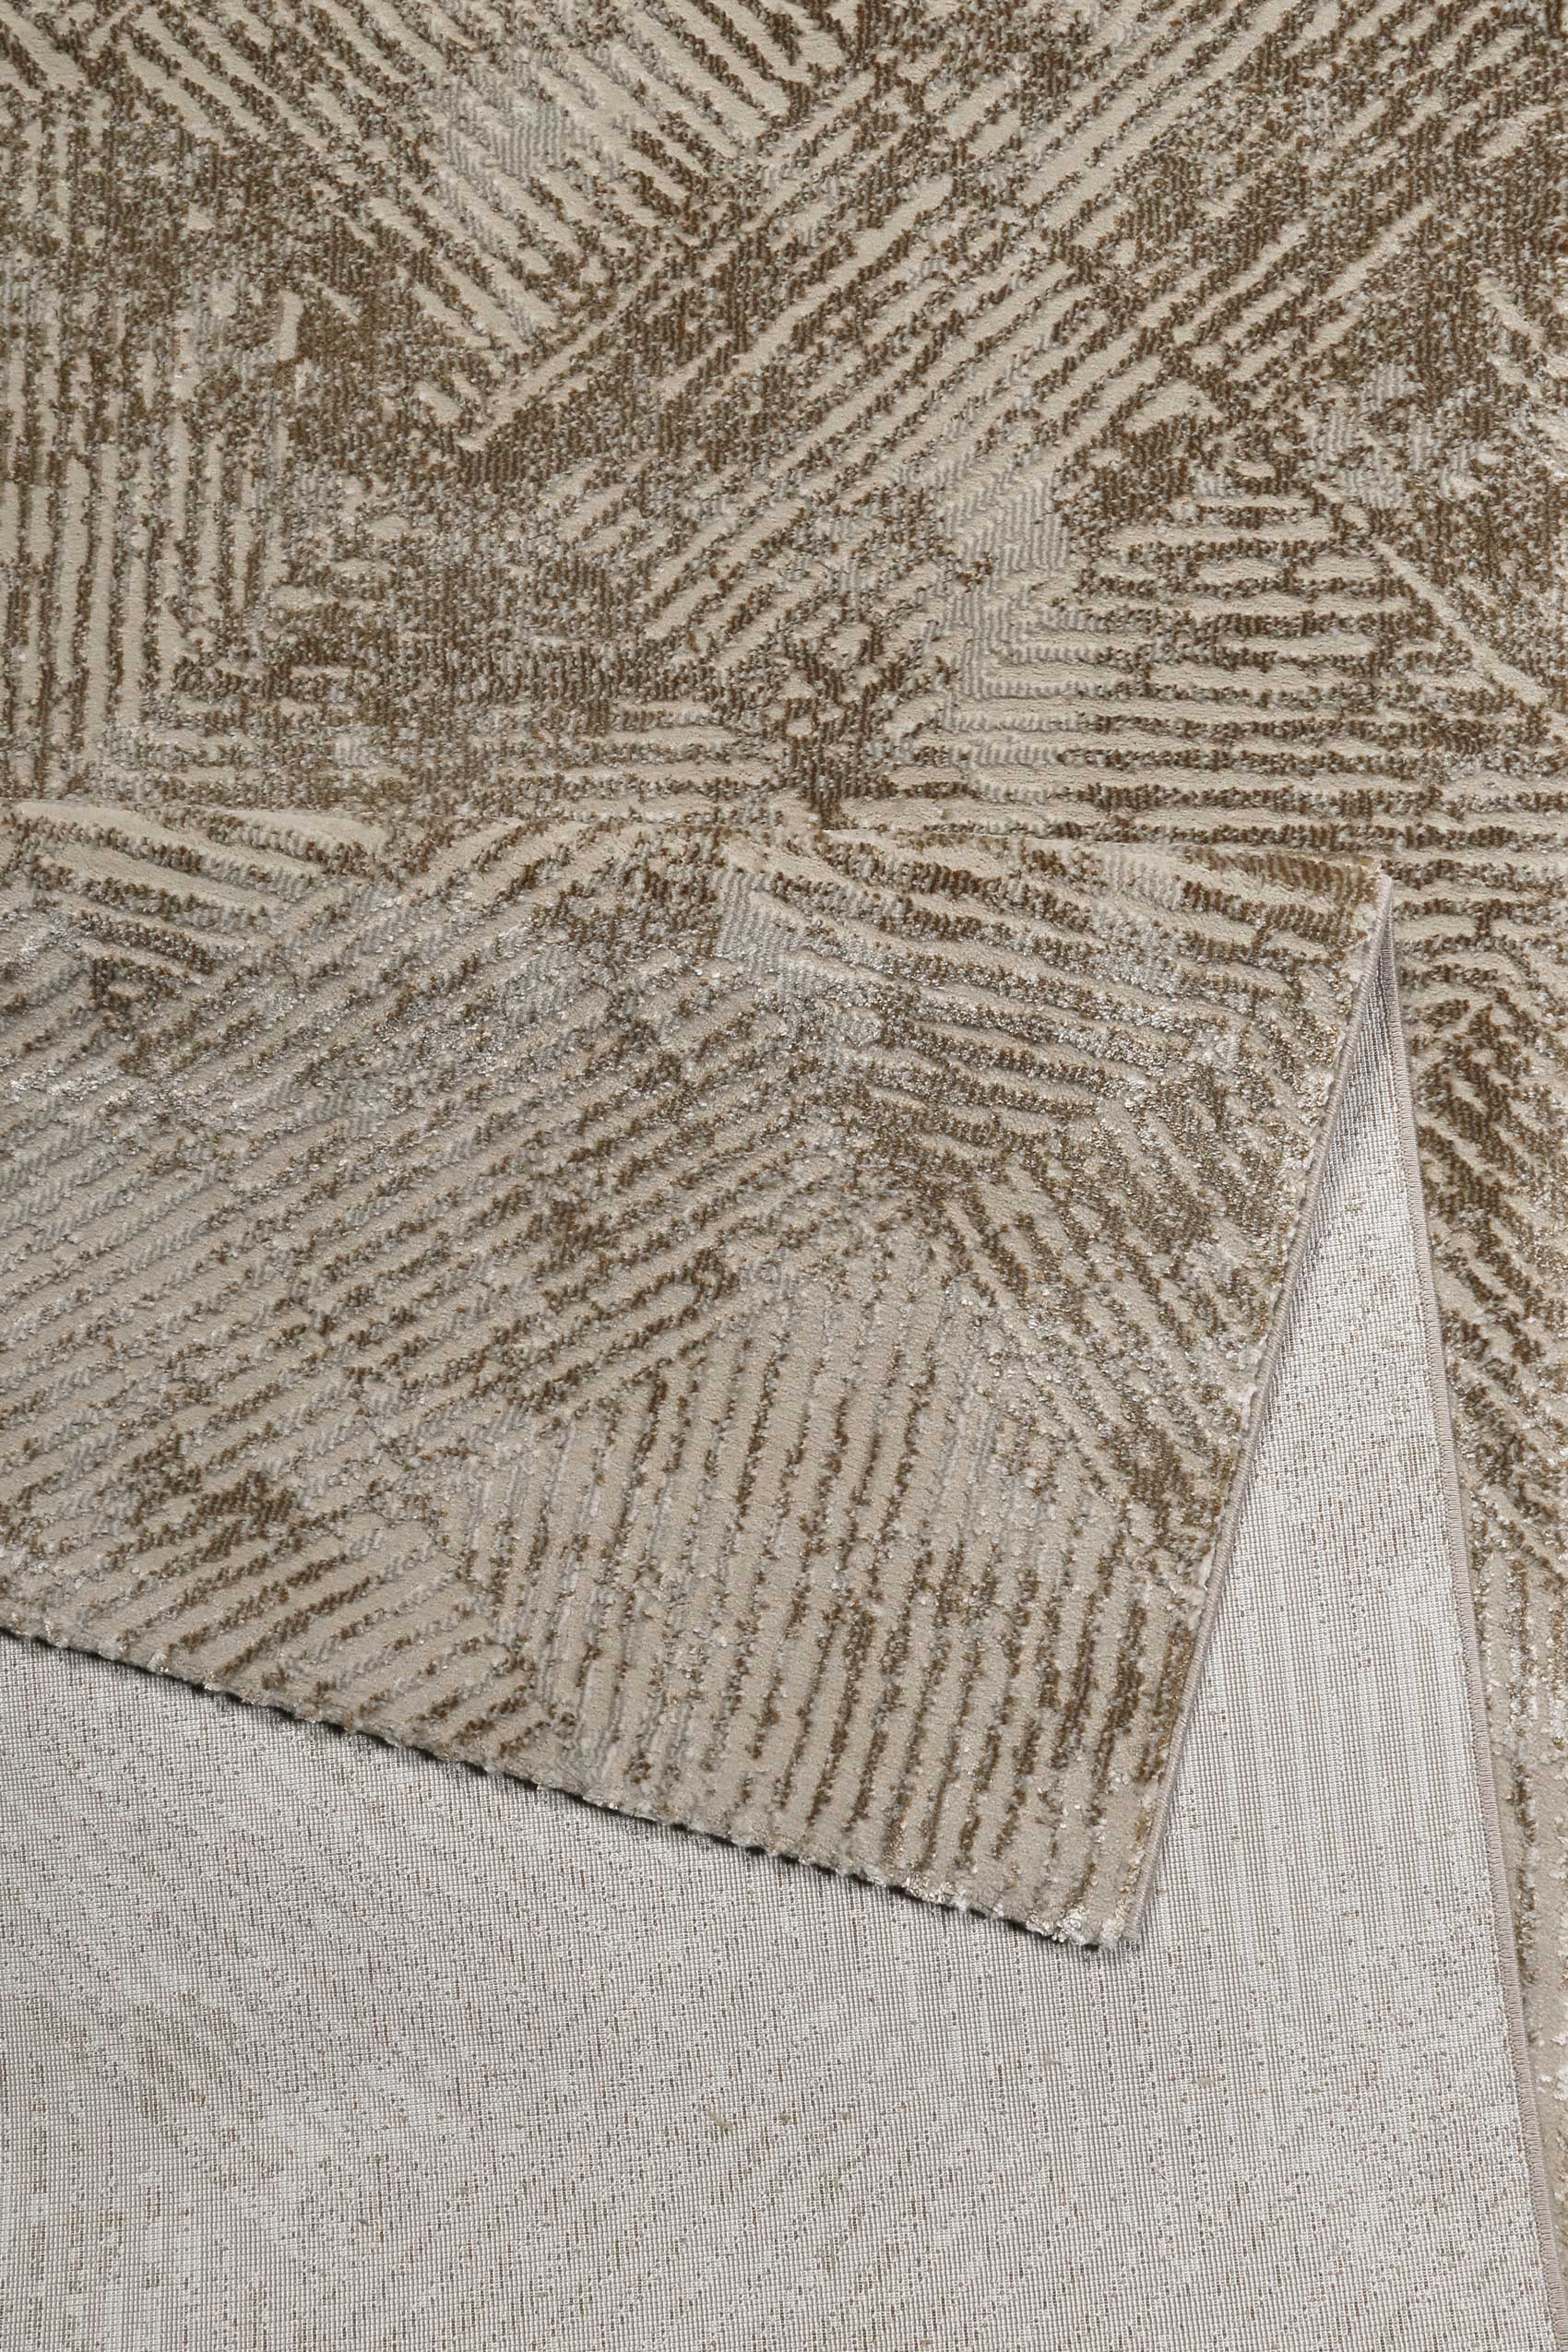 Teppich Beige Neo Vintage » Tiles « WECONhome - Ansicht 3